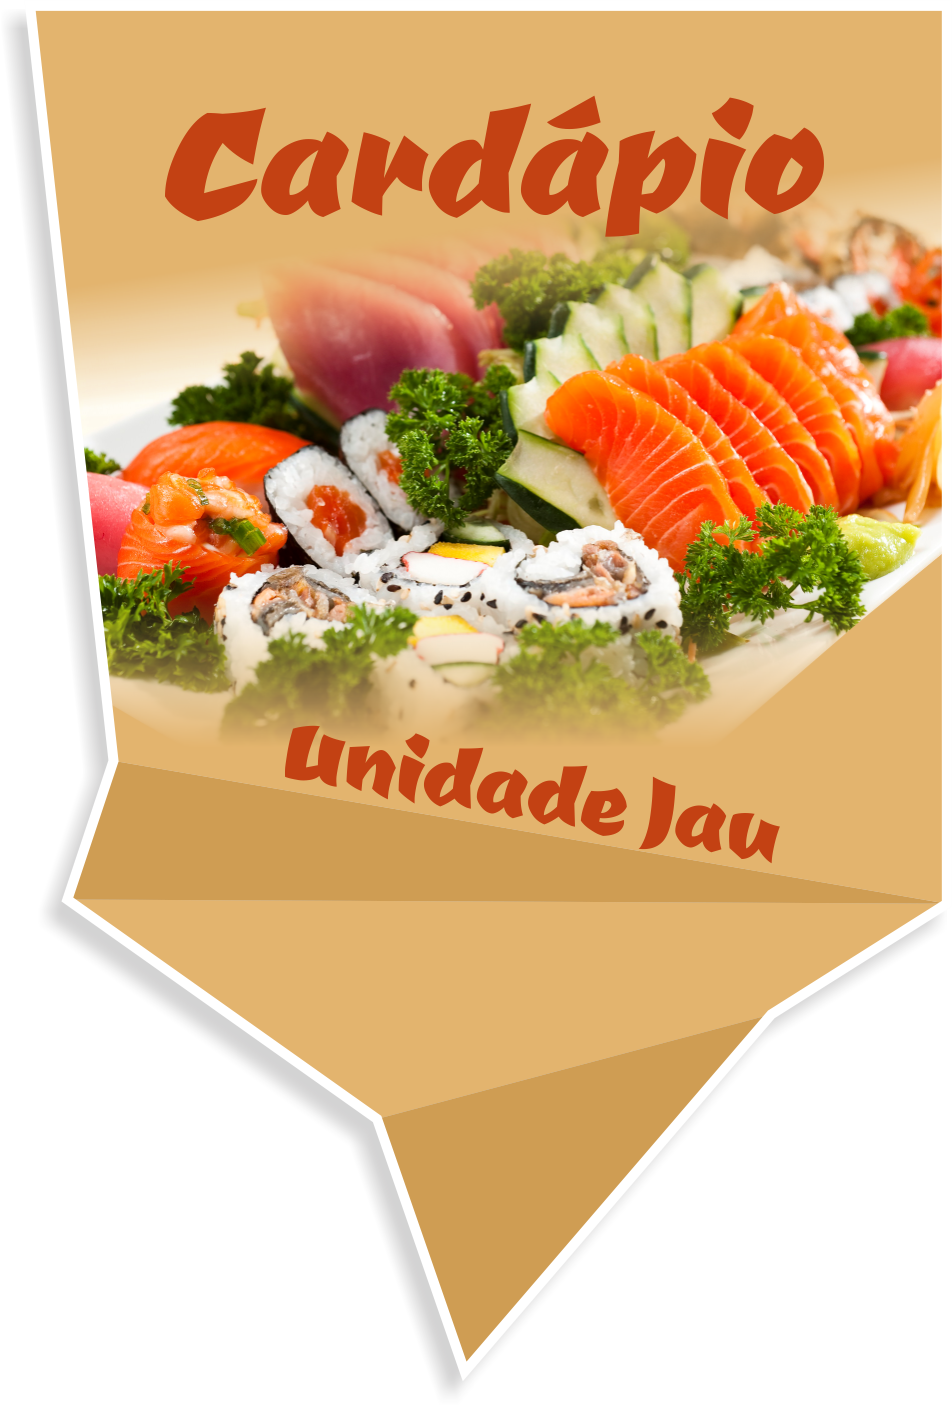 Imagem com comida japonesa, botão para acessar o cardápio da unidade Jau